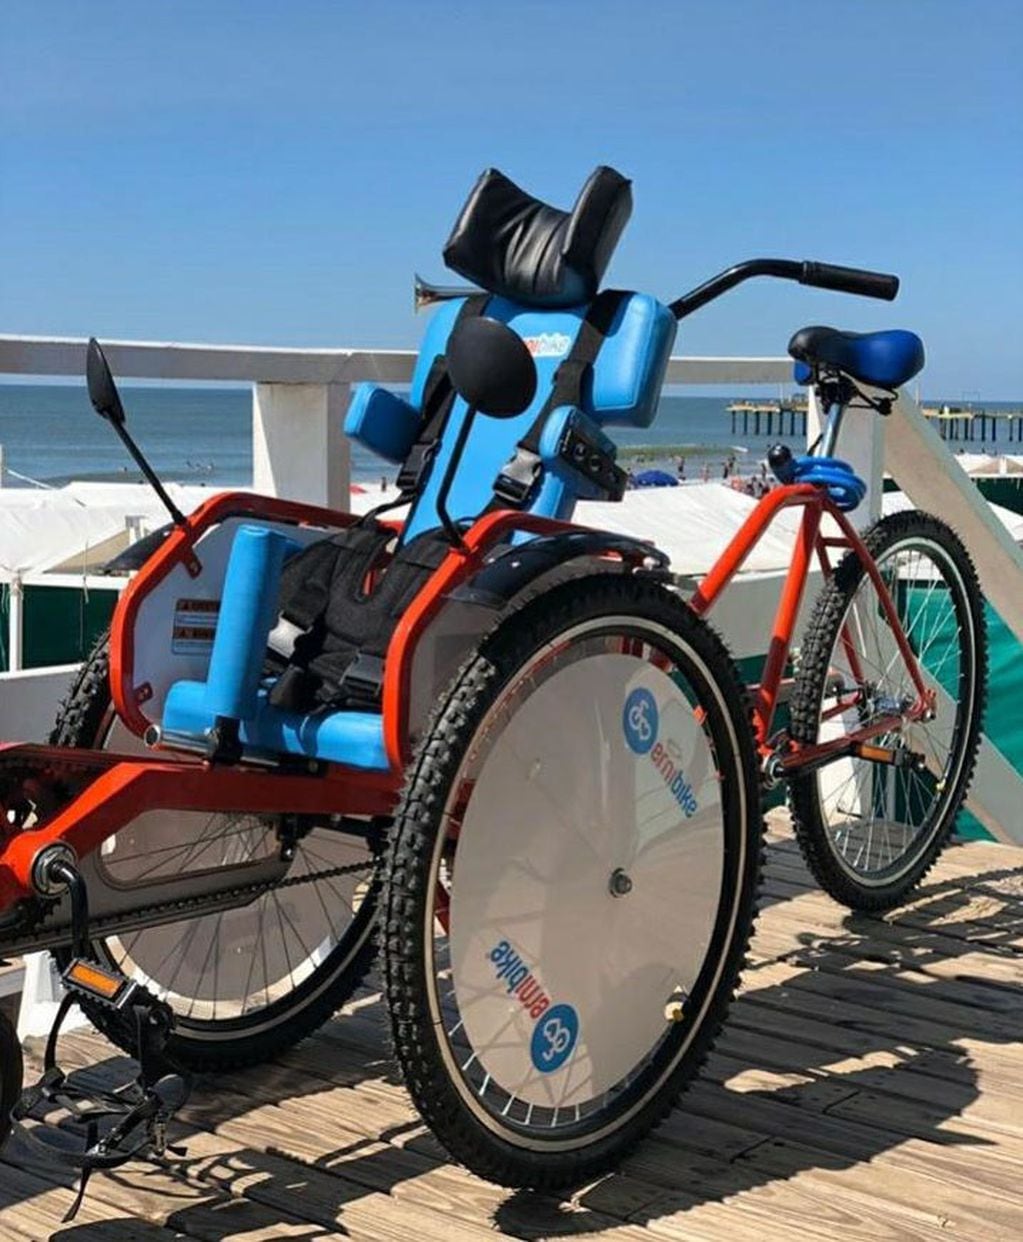 Estos rodados rehabilitan y estimulan a personas con discapacidades. Foto: Web

 